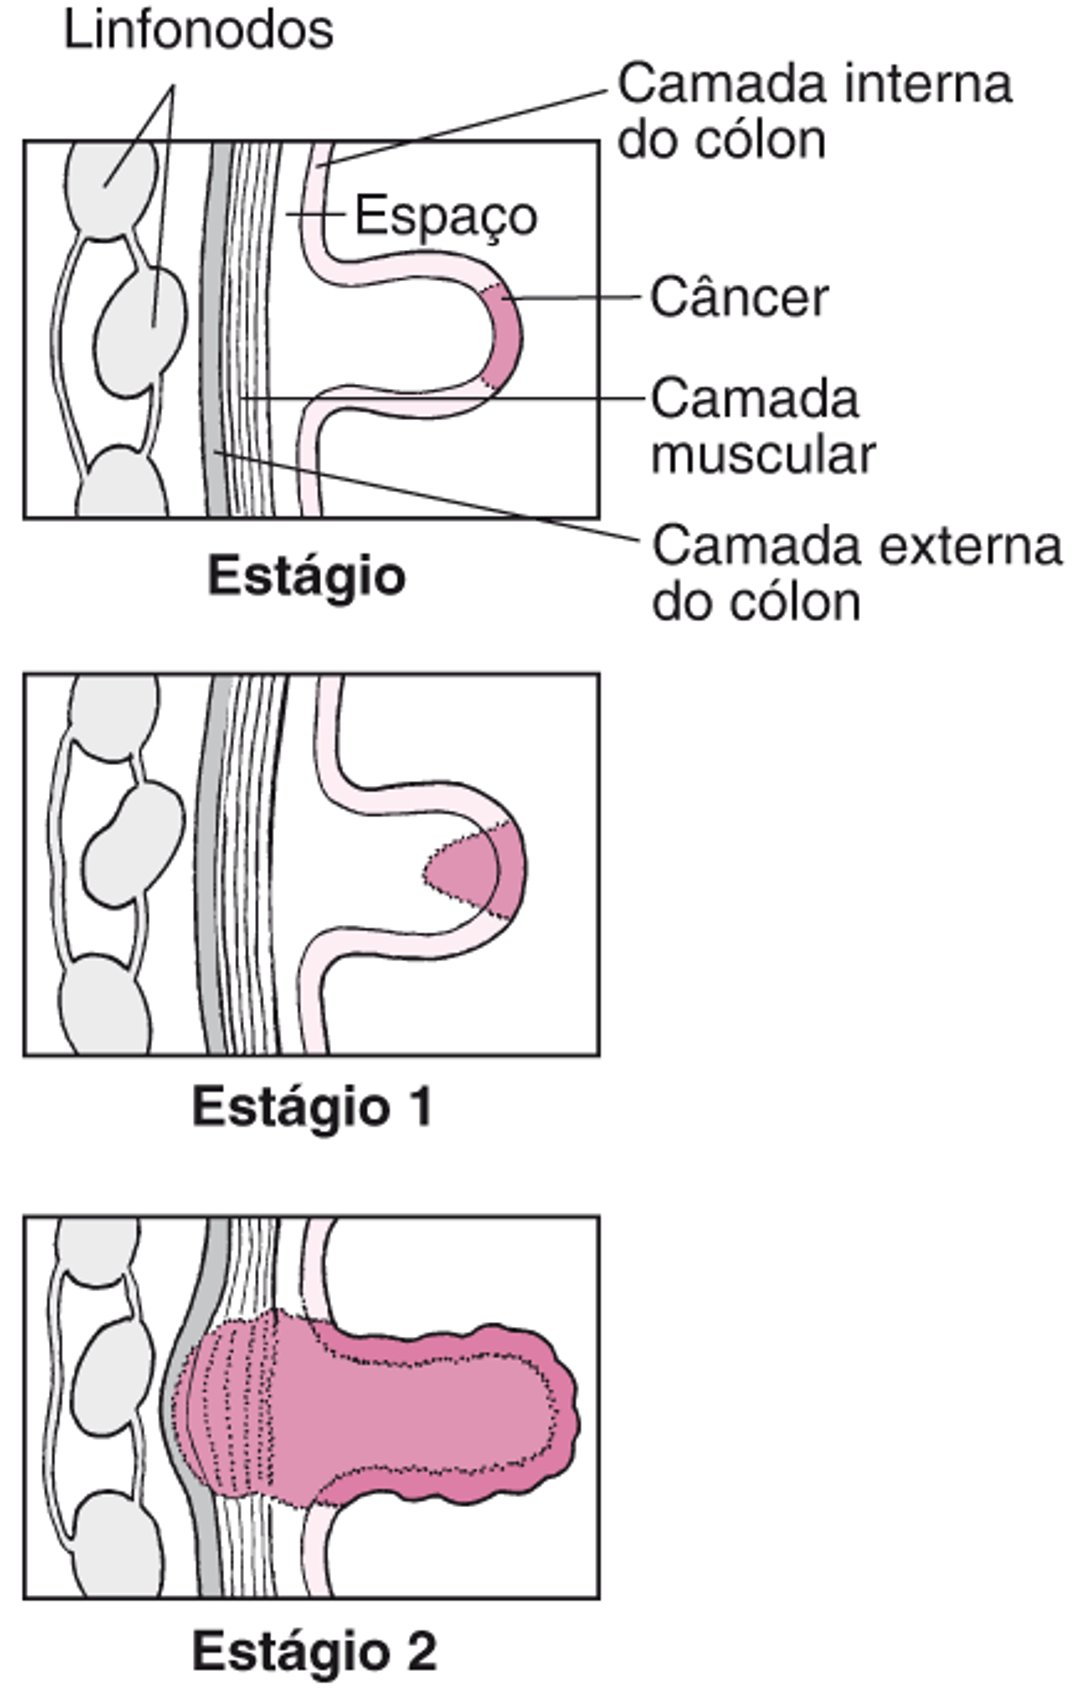 Estágios do câncer de cólon